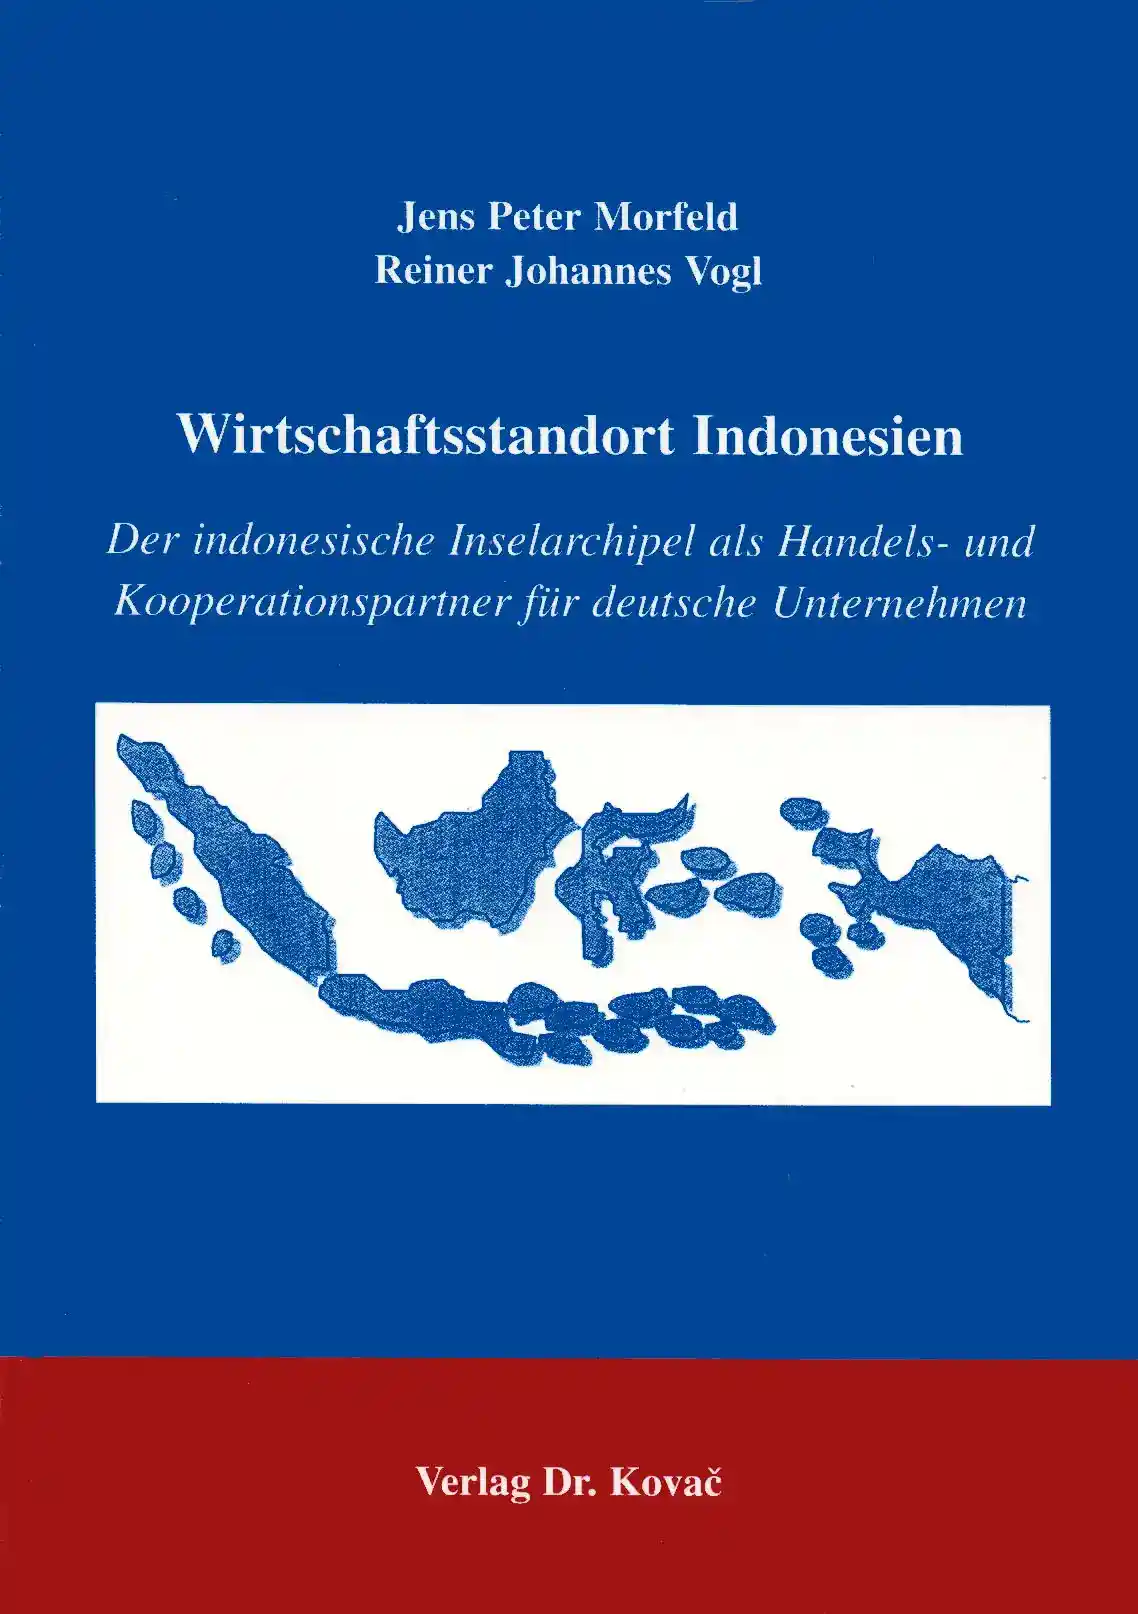 Wirtschaftsstandort Indonesien (Forschungsarbeit)